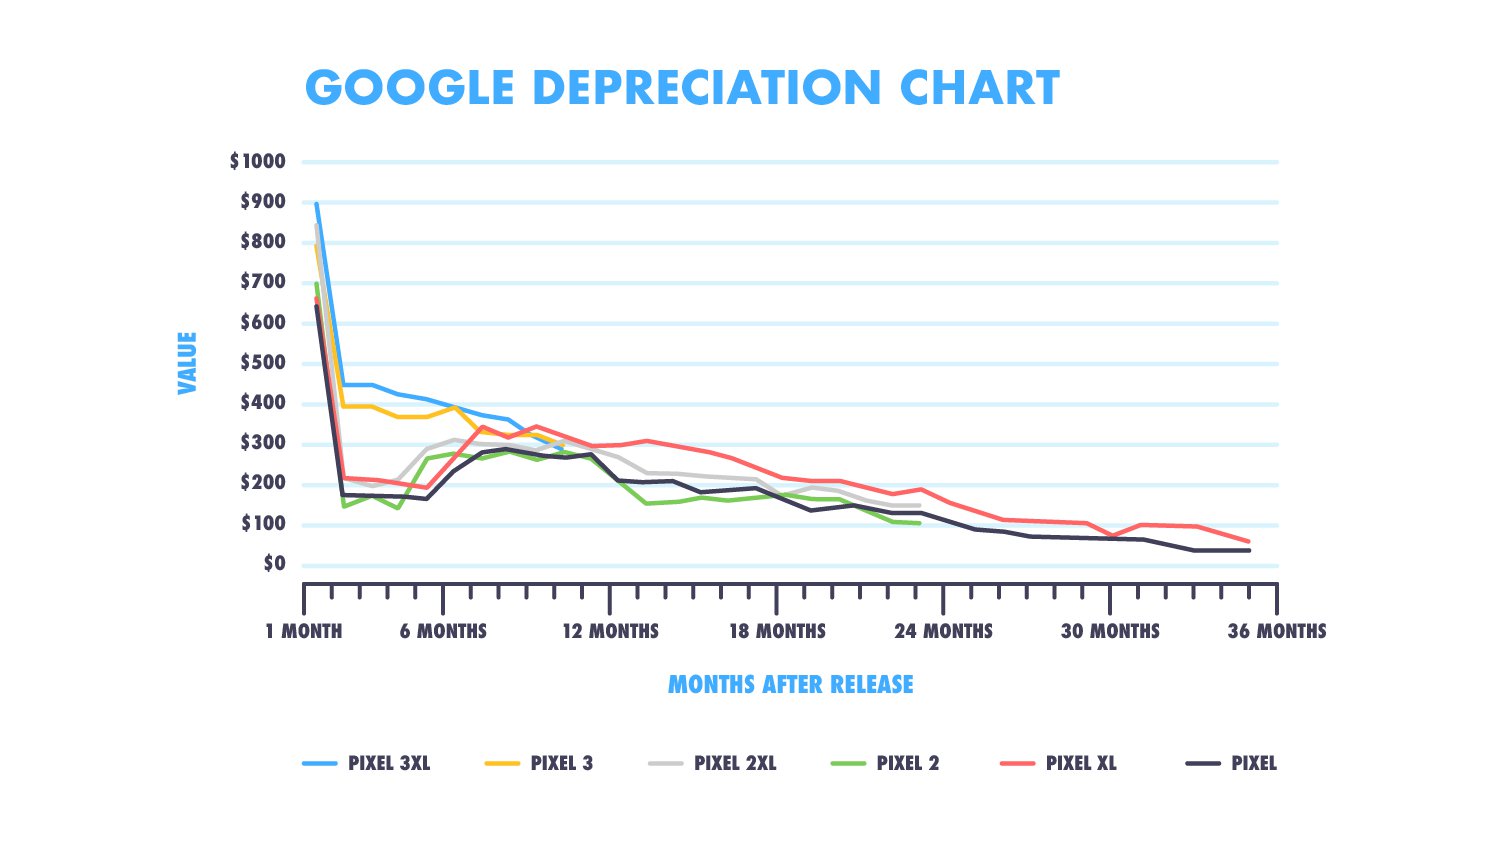 Google depreciation